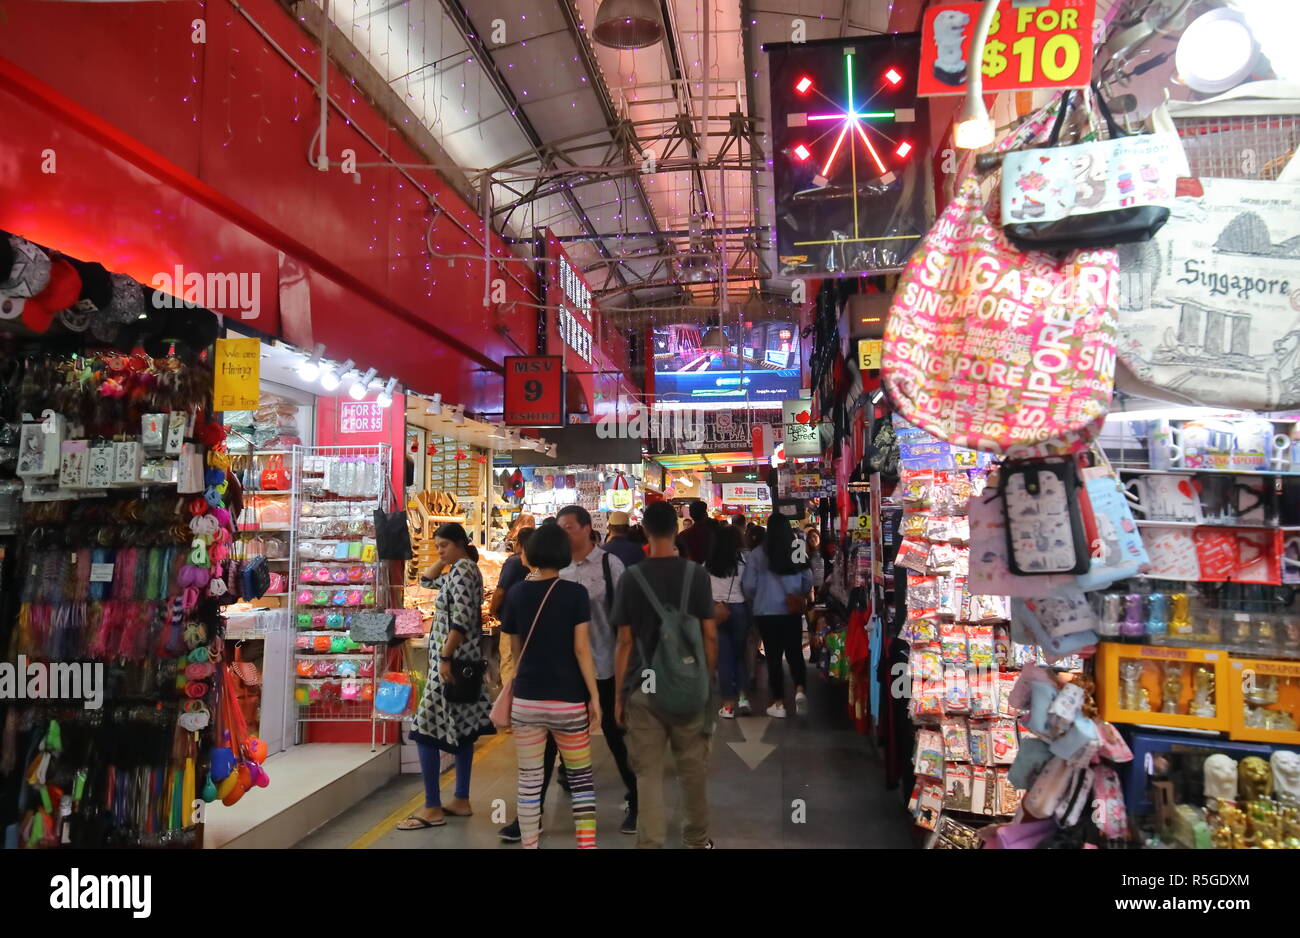 Personnes visitent le quartier de Bugis Street Shopping Arcade Singapour Banque D'Images